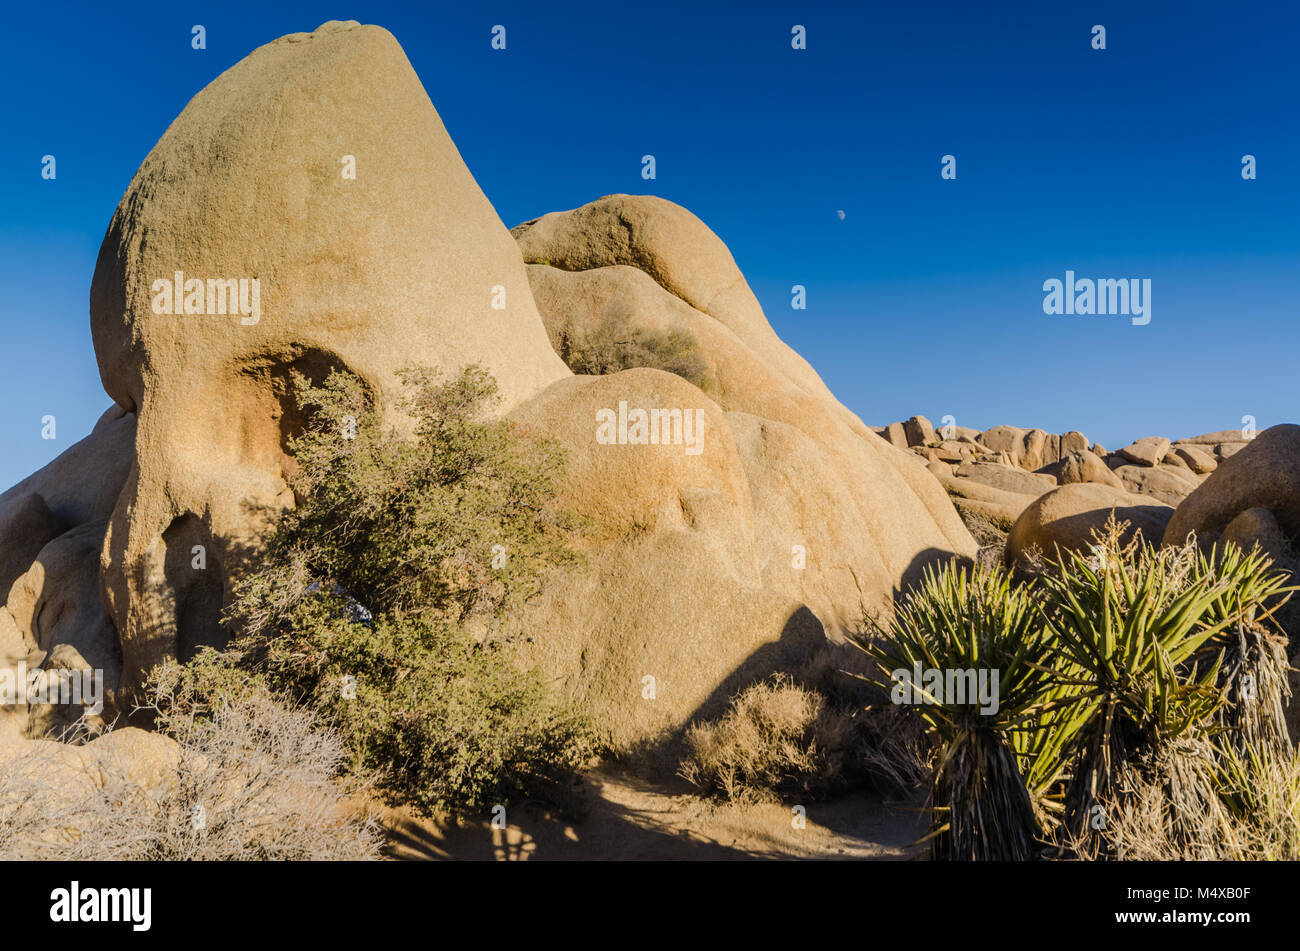 Le crâne Rock formation géologique est un favori des visiteurs de Joshua Tree National Park à Yucca Valley, désert de Mojave, Californie, États-Unis. Banque D'Images